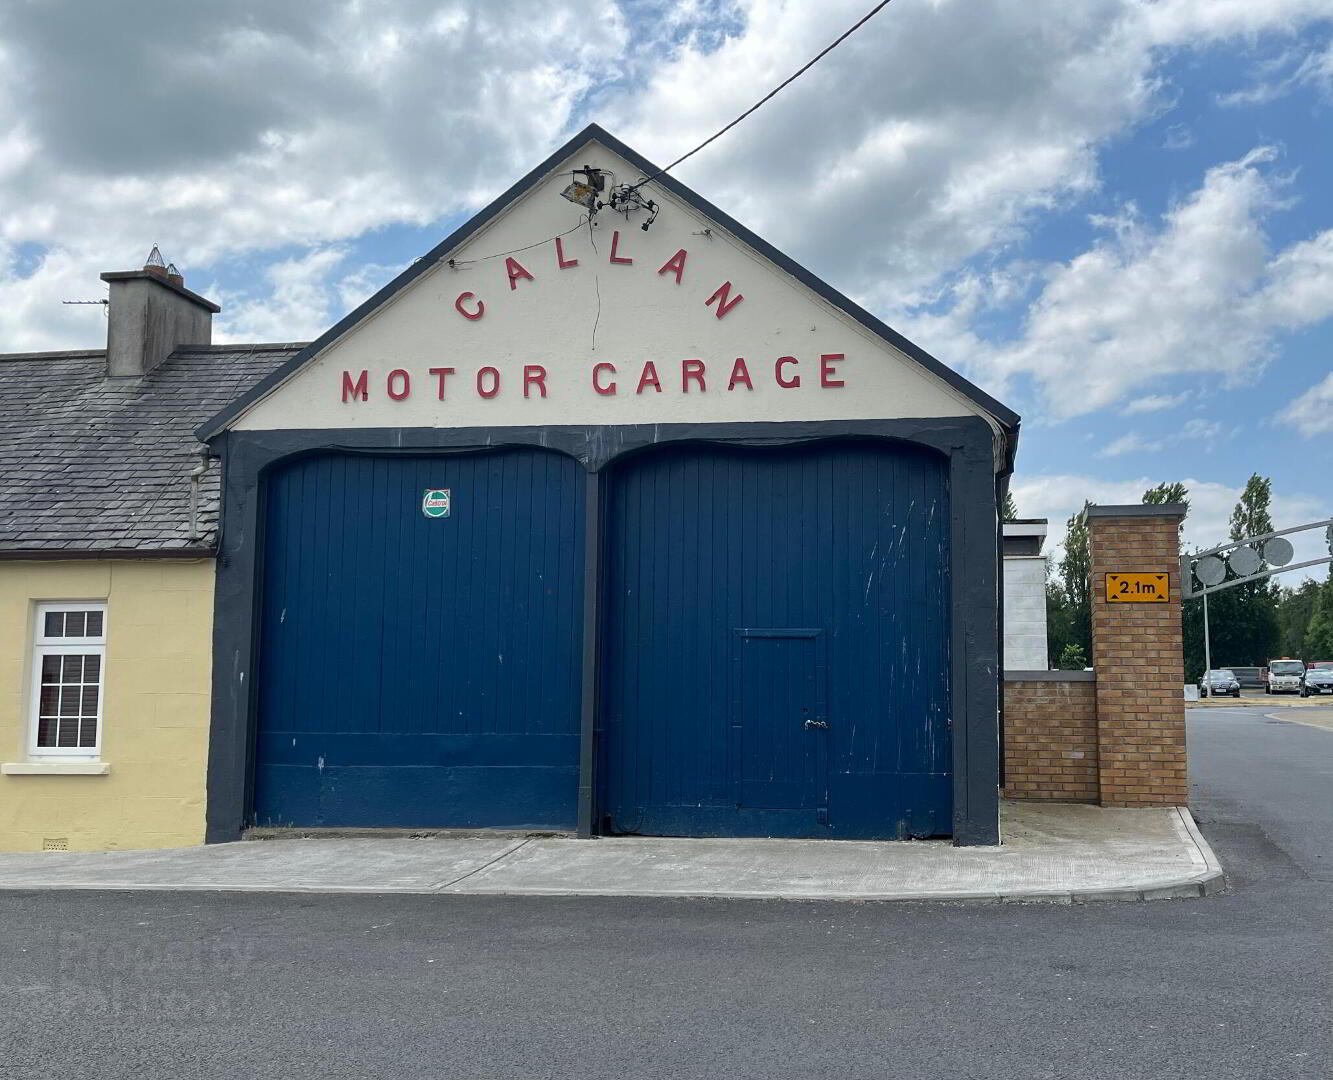 Callan Motor Garage